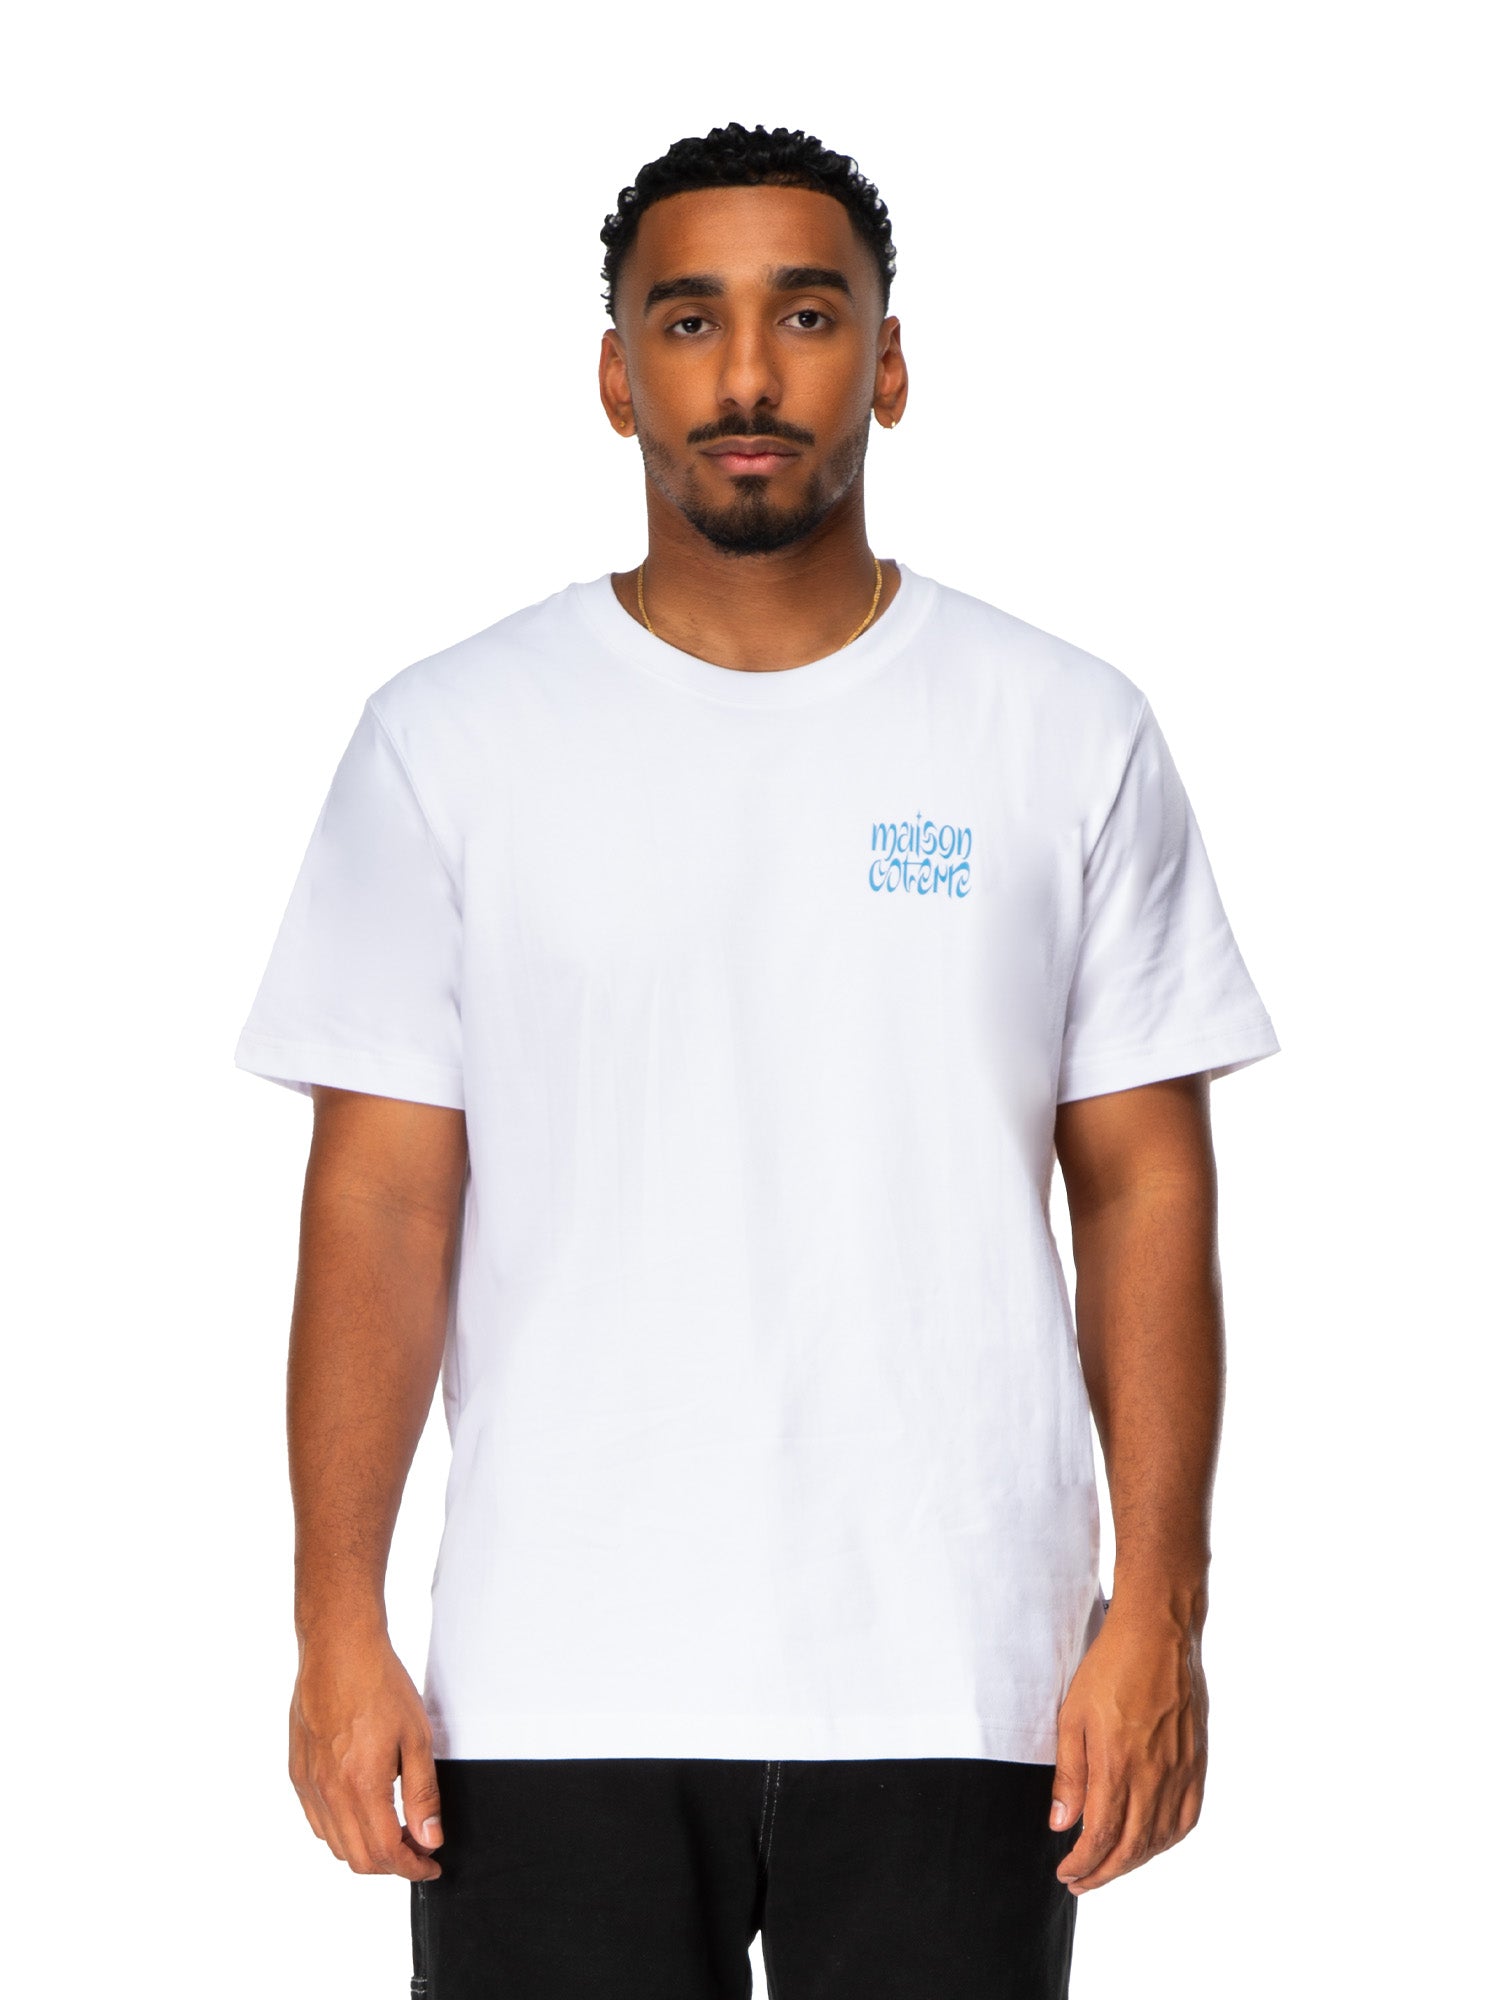 Michael - T-shirt graphique - Blanc